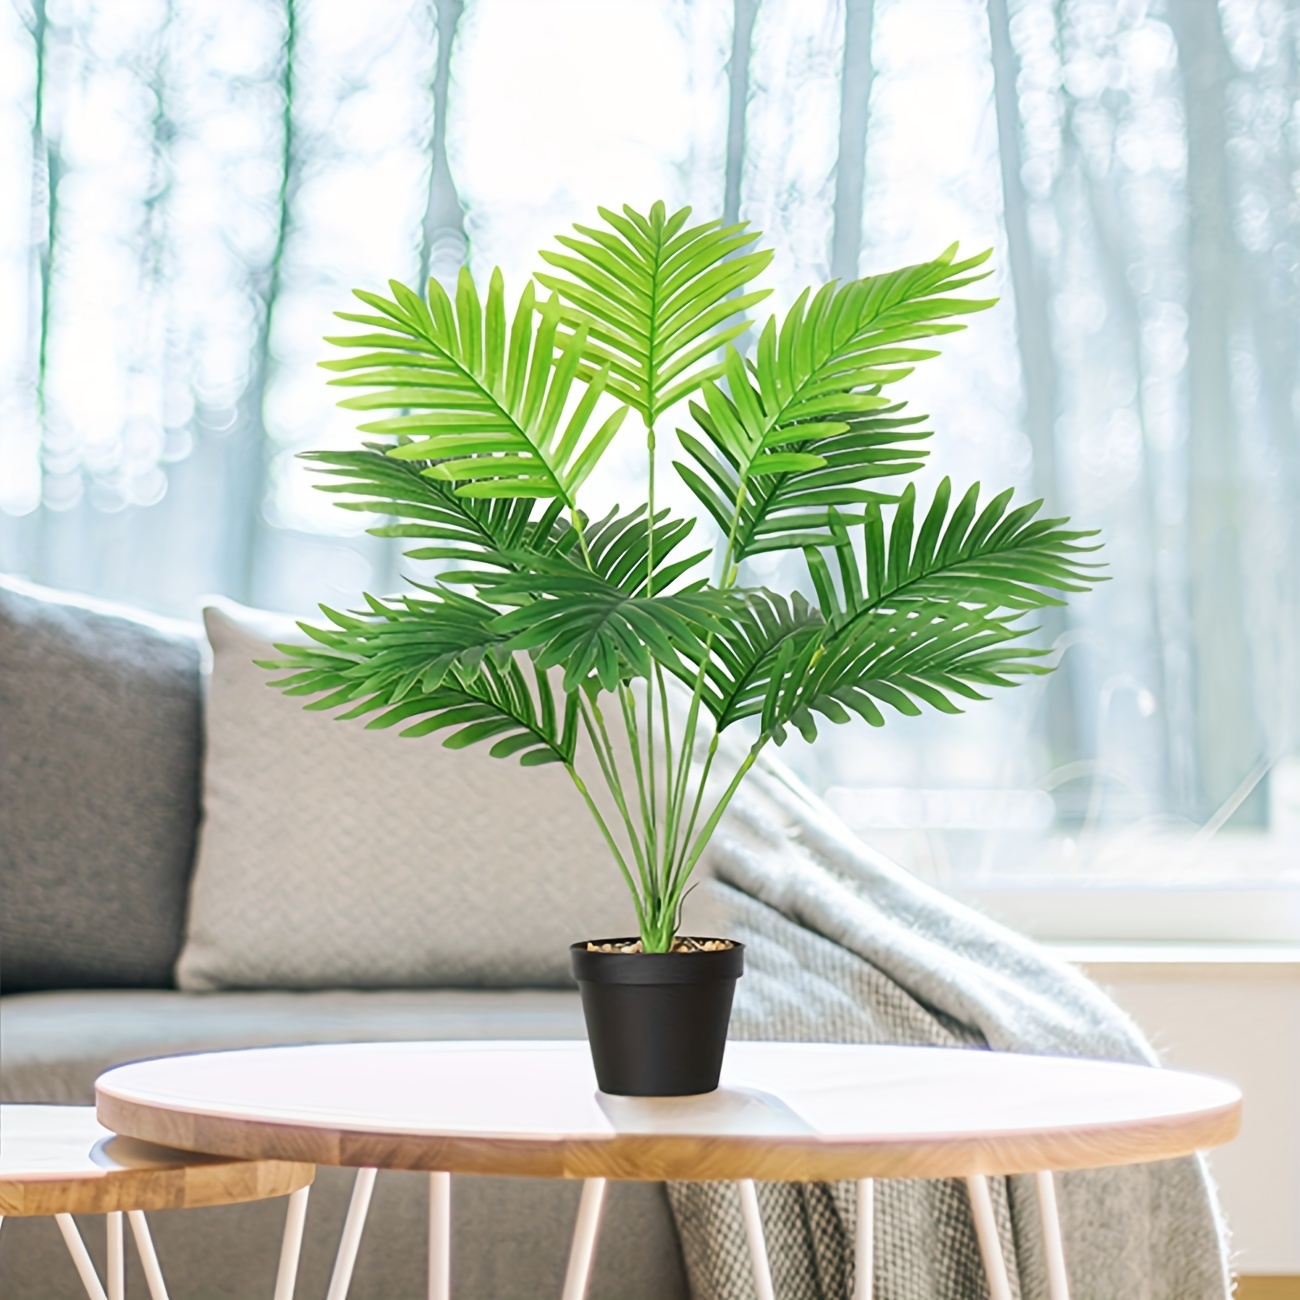 Palmera artificial, planta de palmera sintética, planta de piso, decoración  de plantas para interiores y exteriores, plantas de palma areca de